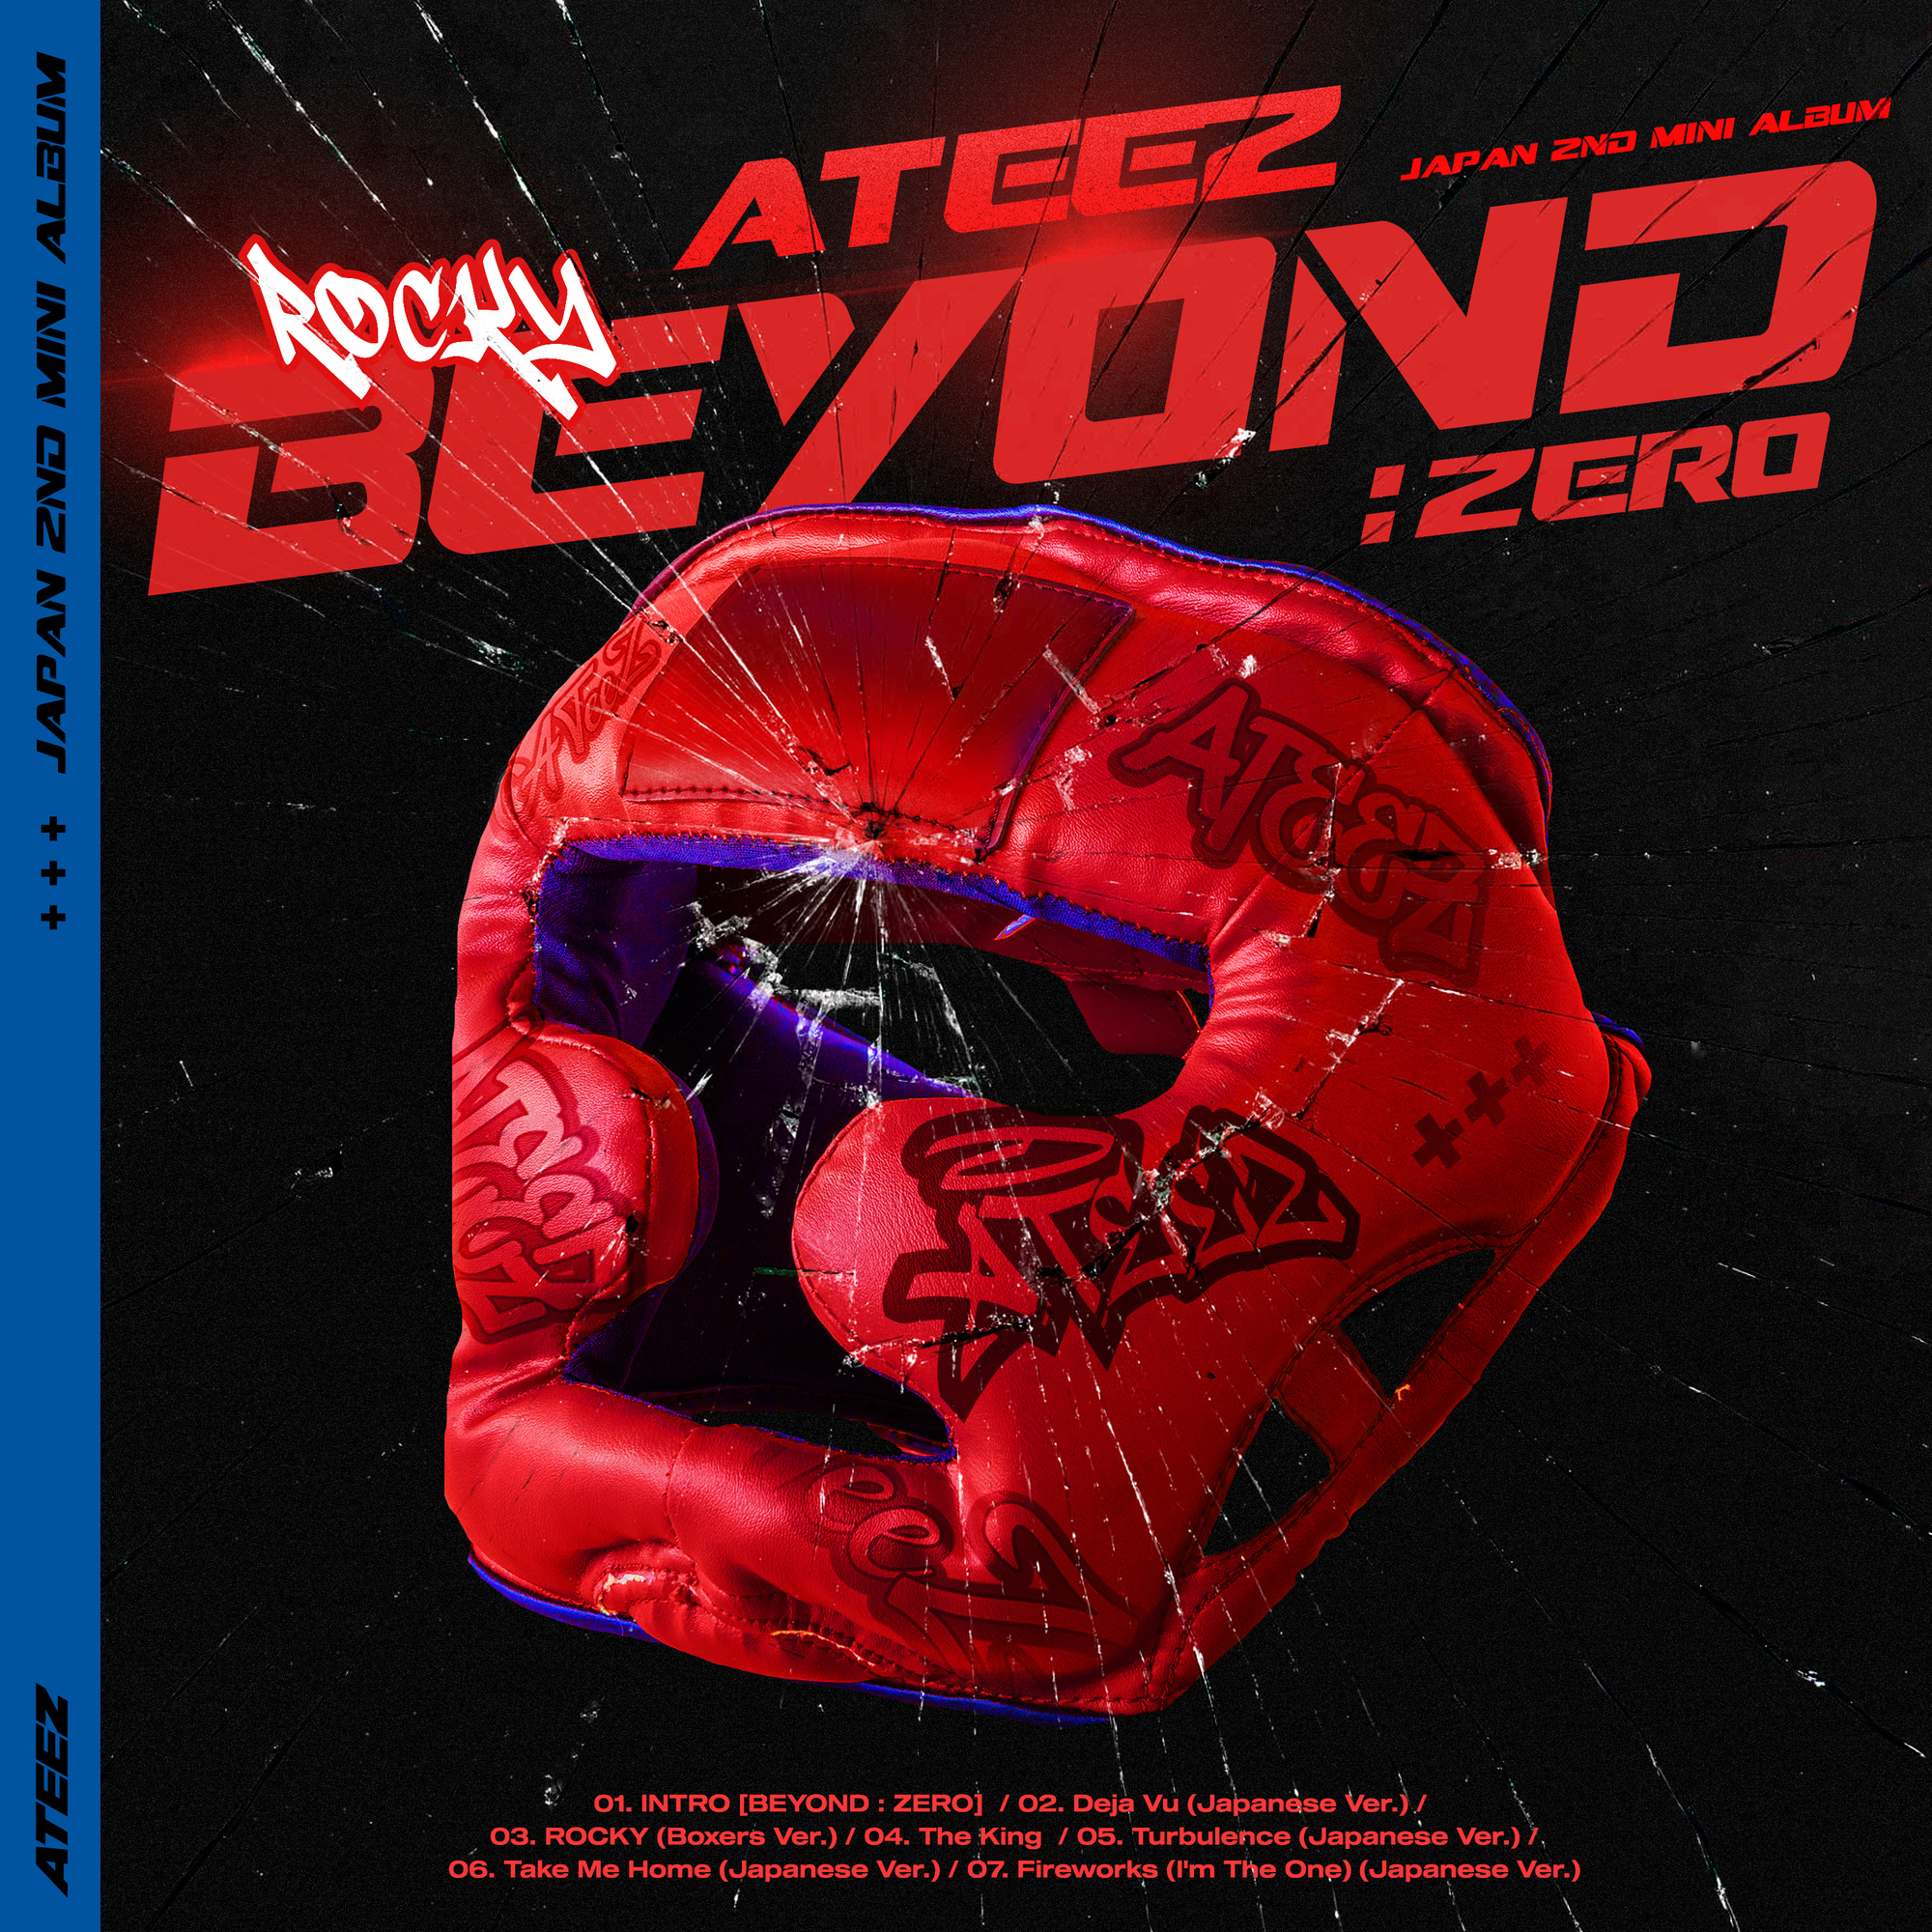 5月25日にATEEZ JAPAN 2ND MINI ALBUM「BEYOND : ZERO」発売決定 